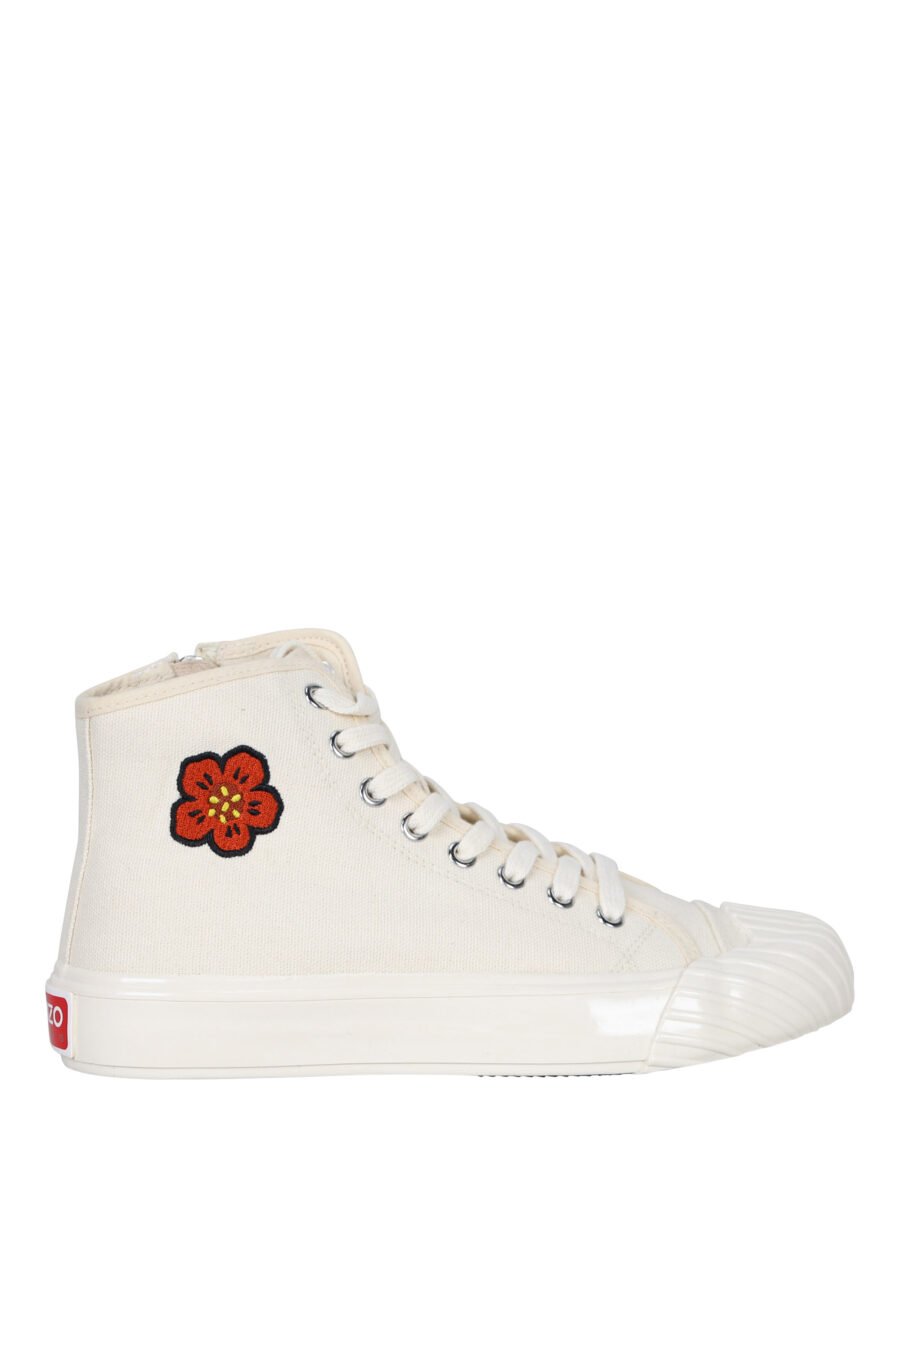 Zapatillas color crema altas "kenzo school" con logo "boke flower" - 3612230423435